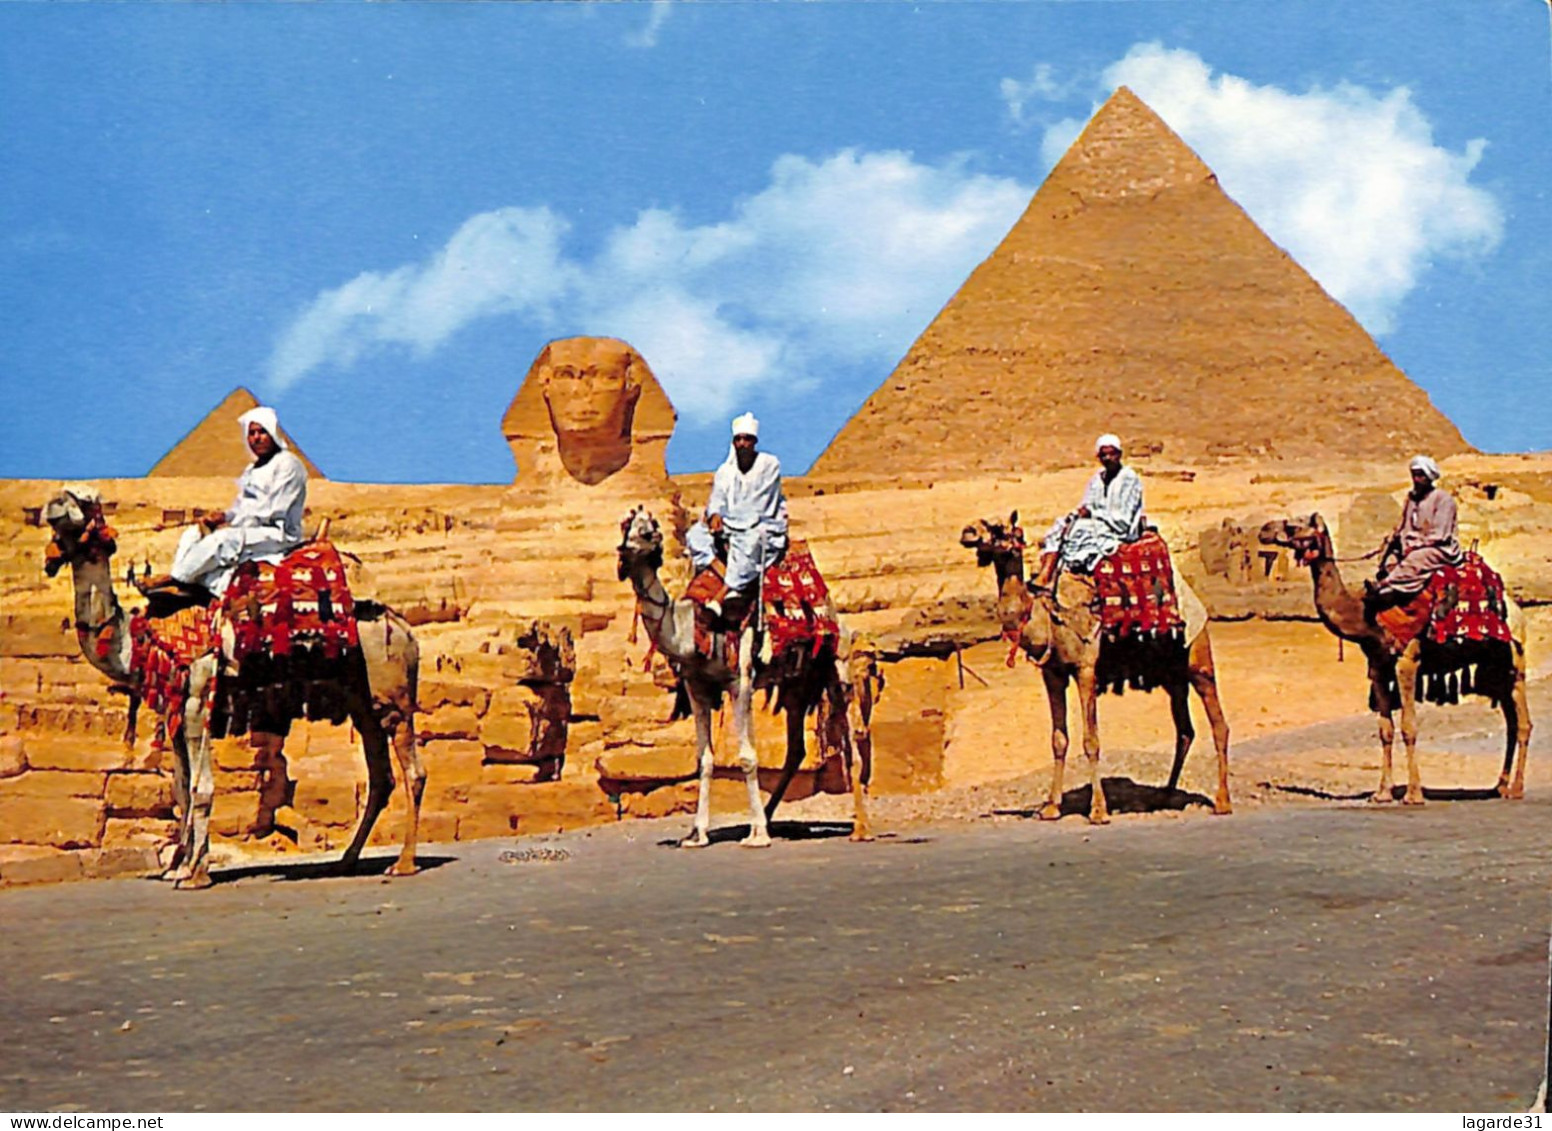 egypte lot de 29 cartes toutes scannées